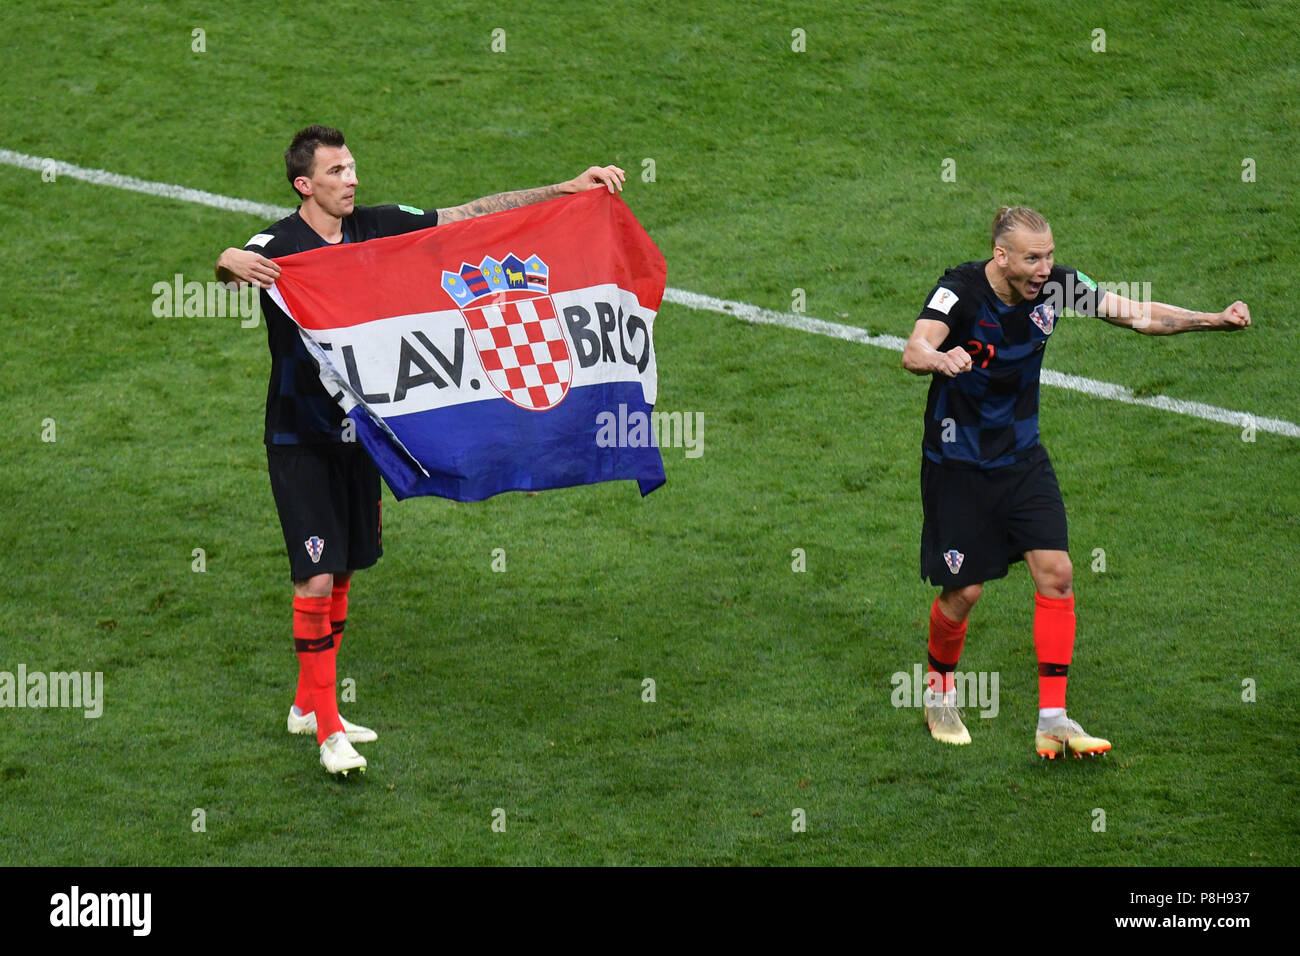 Moscou, Russie. 11 juillet, 2018. Mario MANDZUKIC (CRO) avec drapeau croate, drapeau après la fin du jeu, re : Domagoj VIDA (CRO), jubilation finale, la jubilation, la joie, l'enthousiasme, de l'action. Croatie (CRO) - Angleterre (FRA) 2-1 demi-finale nV, Série de quatre, Match 62 le 07/11/2018 à Moscou, stade Luzhniki, Coupe du Monde de Football 2018 en Russie à partir de la 14.06. - 15.07.2018. | conditions dans le monde entier : dpa Crédit photo alliance/Alamy Live News Banque D'Images